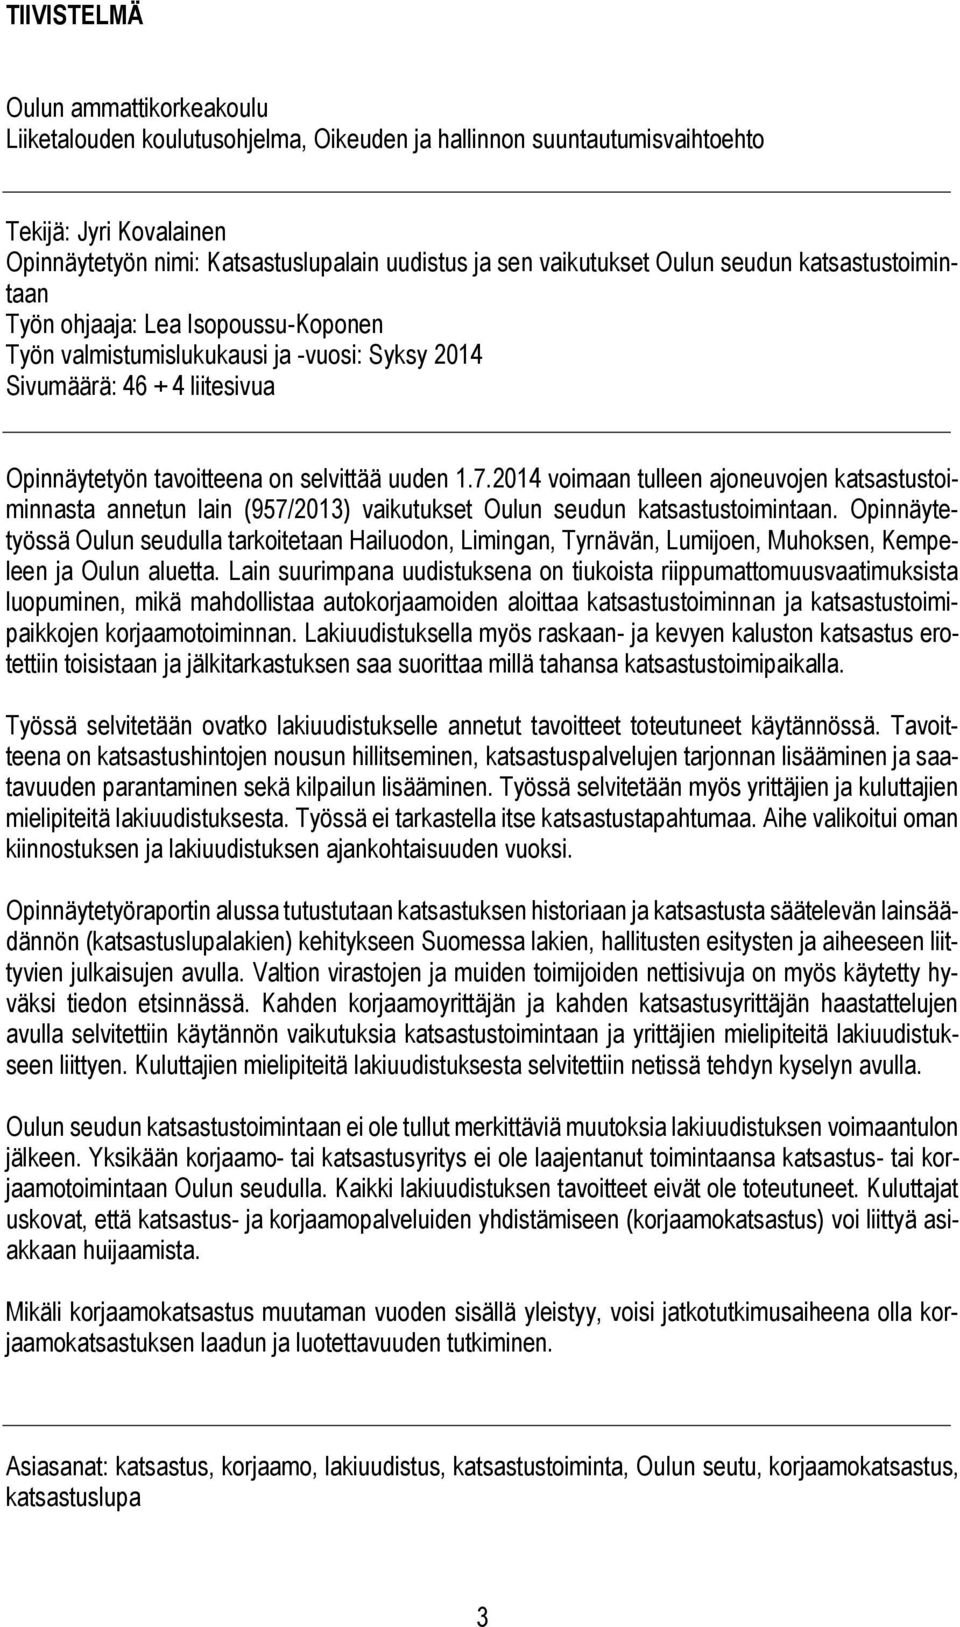 uuden 1.7.2014 voimaan tulleen ajoneuvojen katsastustoiminnasta annetun lain (957/2013) vaikutukset Oulun seudun katsastustoimintaan.